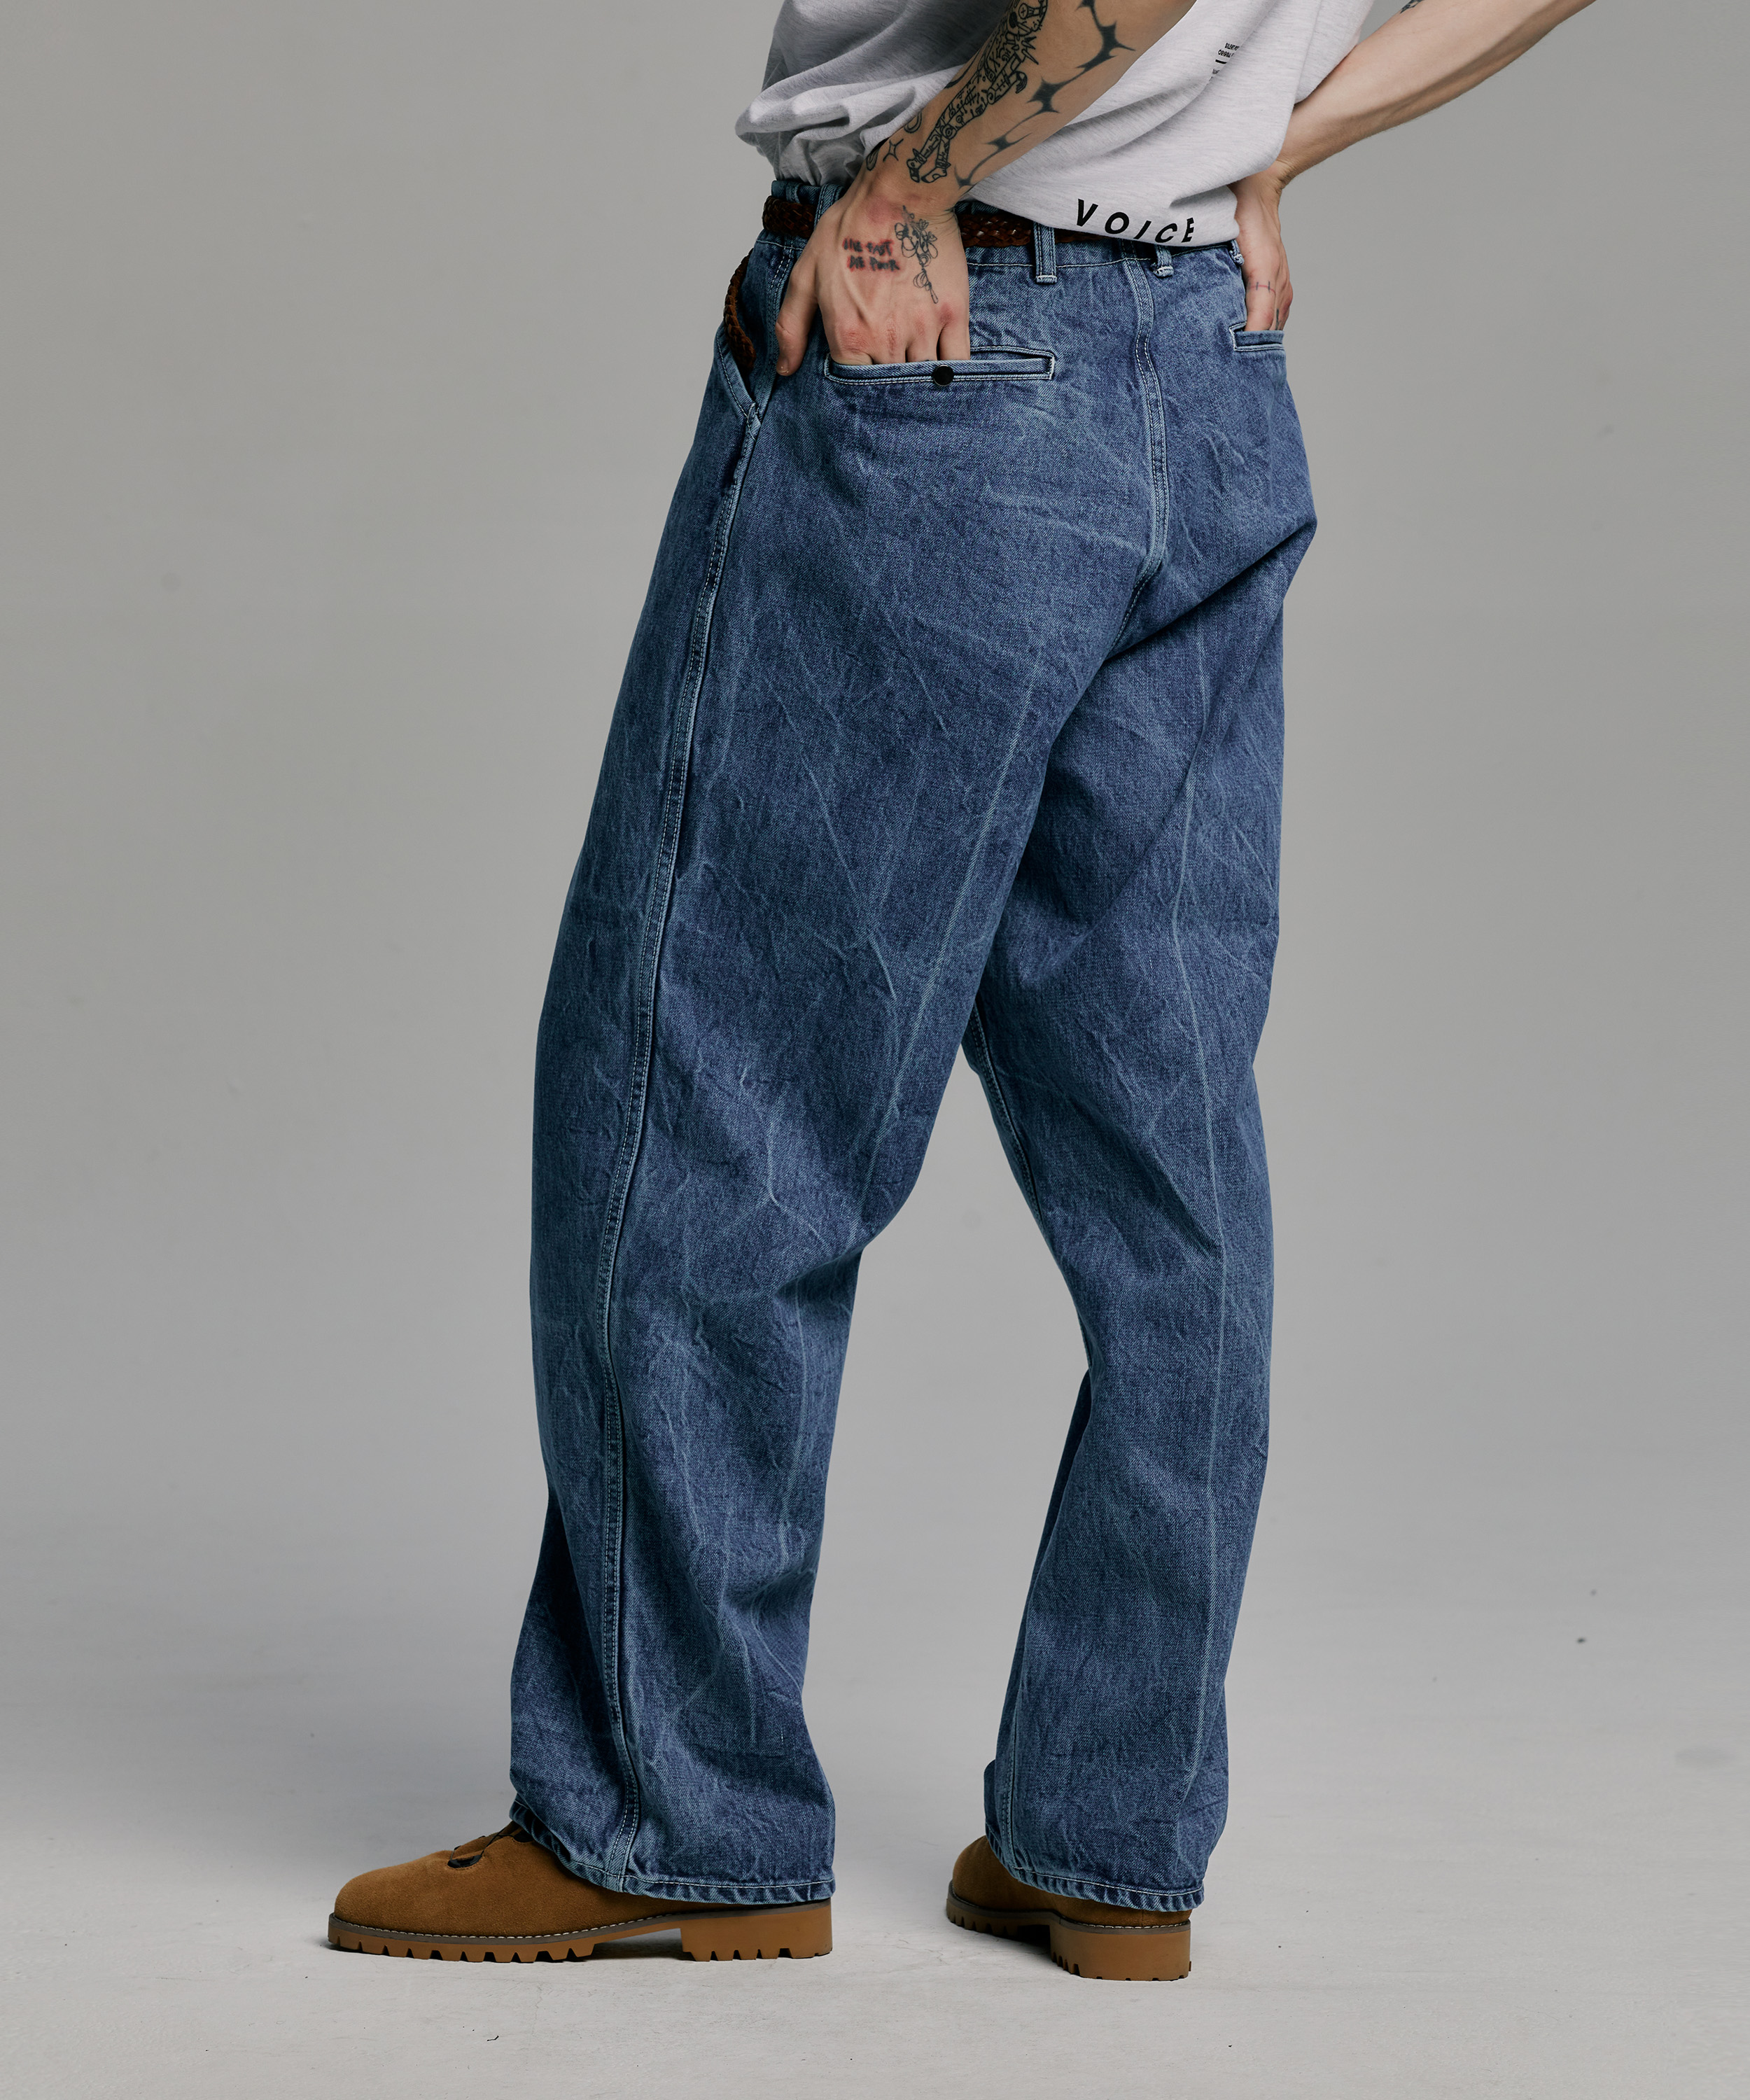 Frisko Jeans 15oz Super Heavy Weigh Denim (Indigo)